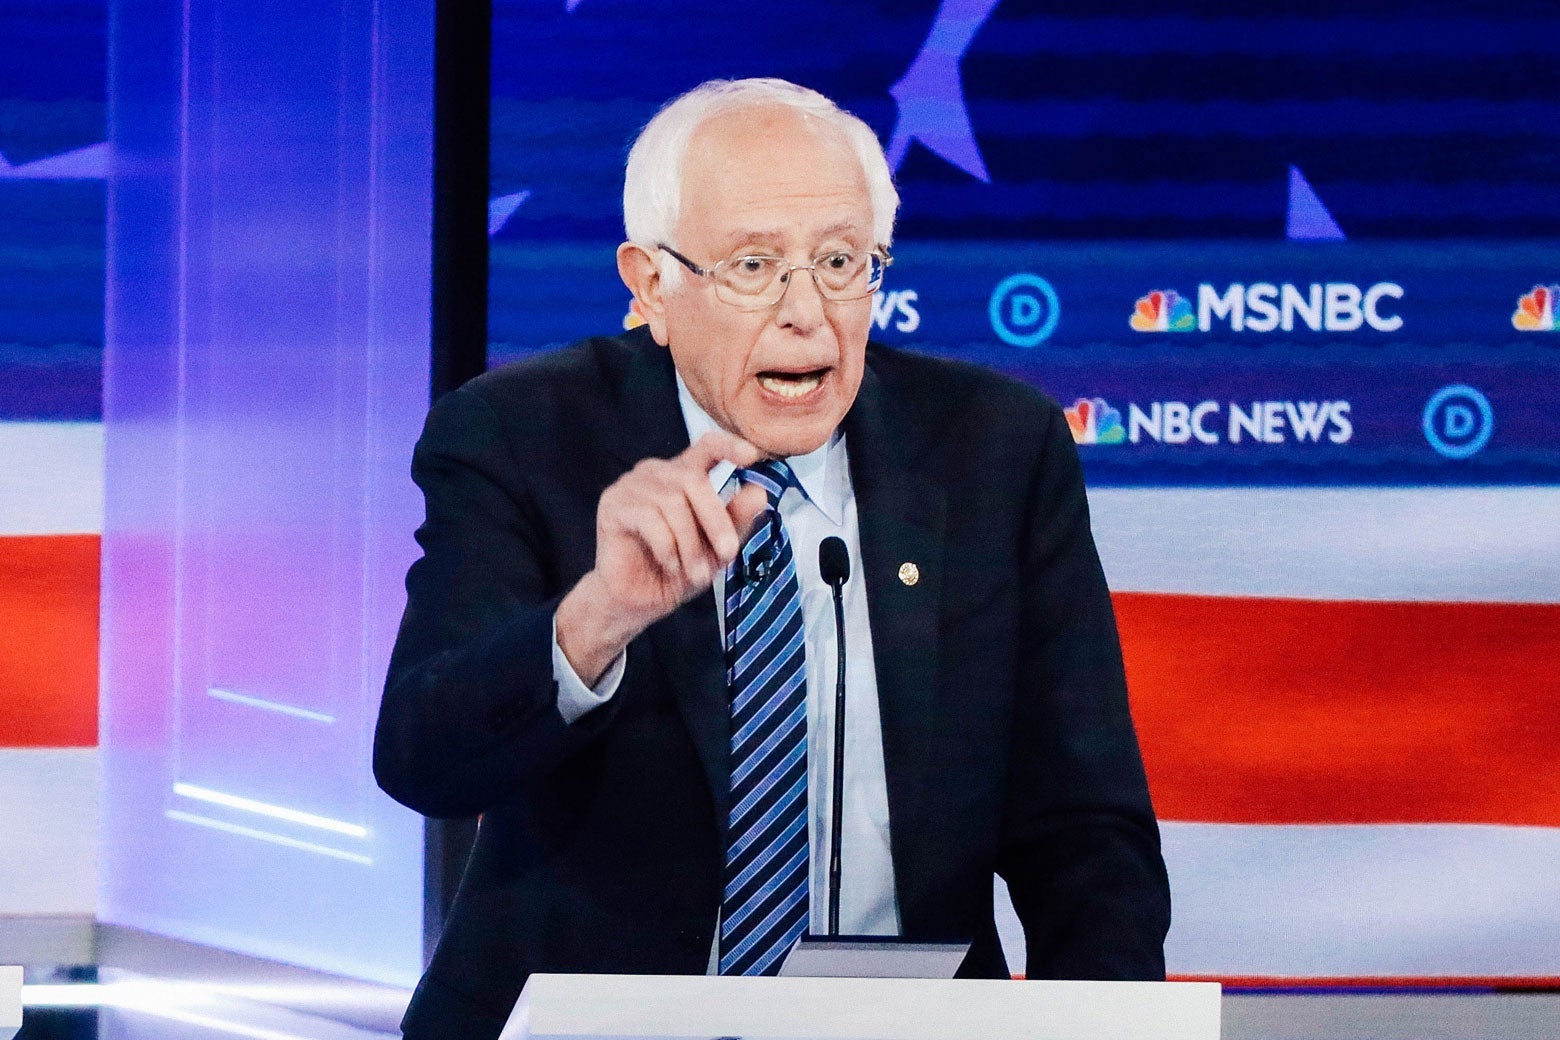 Bernie Sanders gestures while speaking behind a podium at the debate.